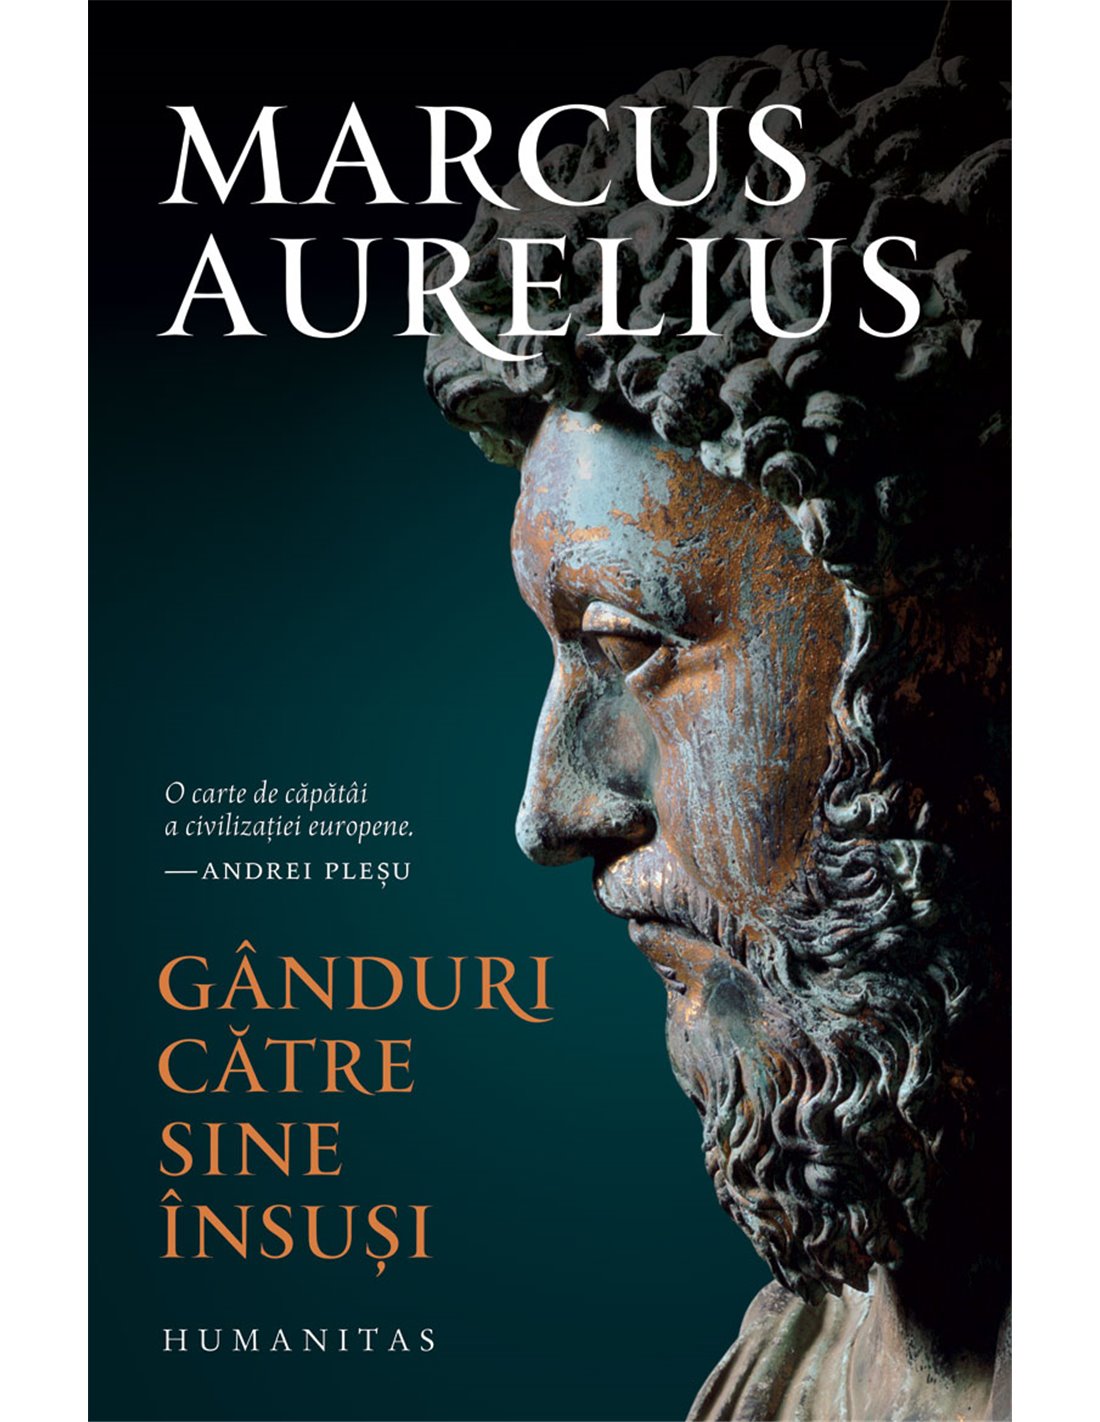 Ganduri către sine insusi - Marcus Aurelius | Editura Humanitas